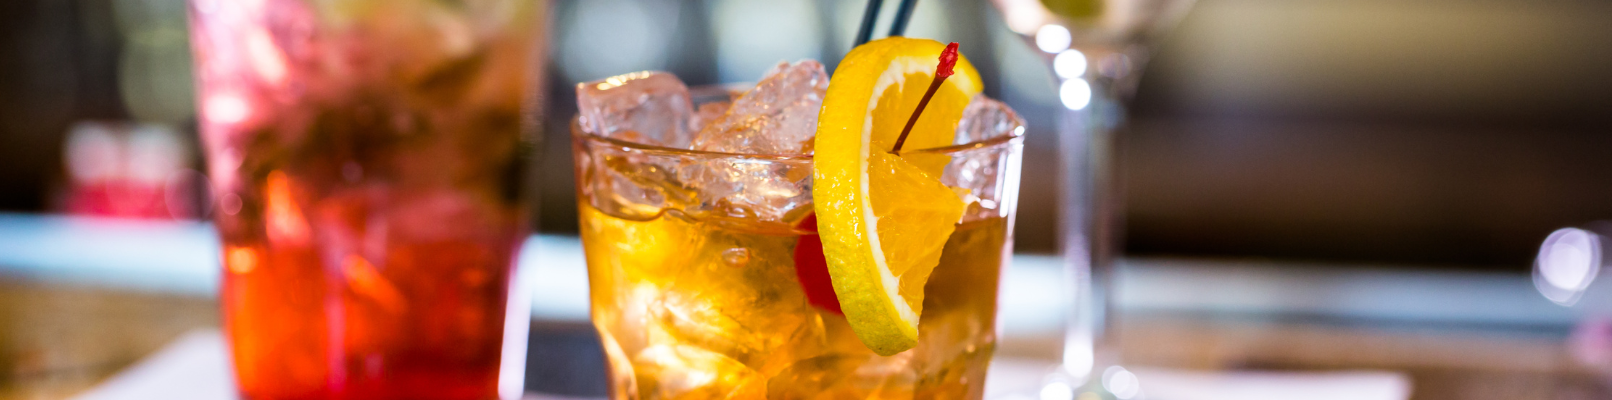 Алкогольное меню к весенним праздникам – наслаждаемся коктейлями!